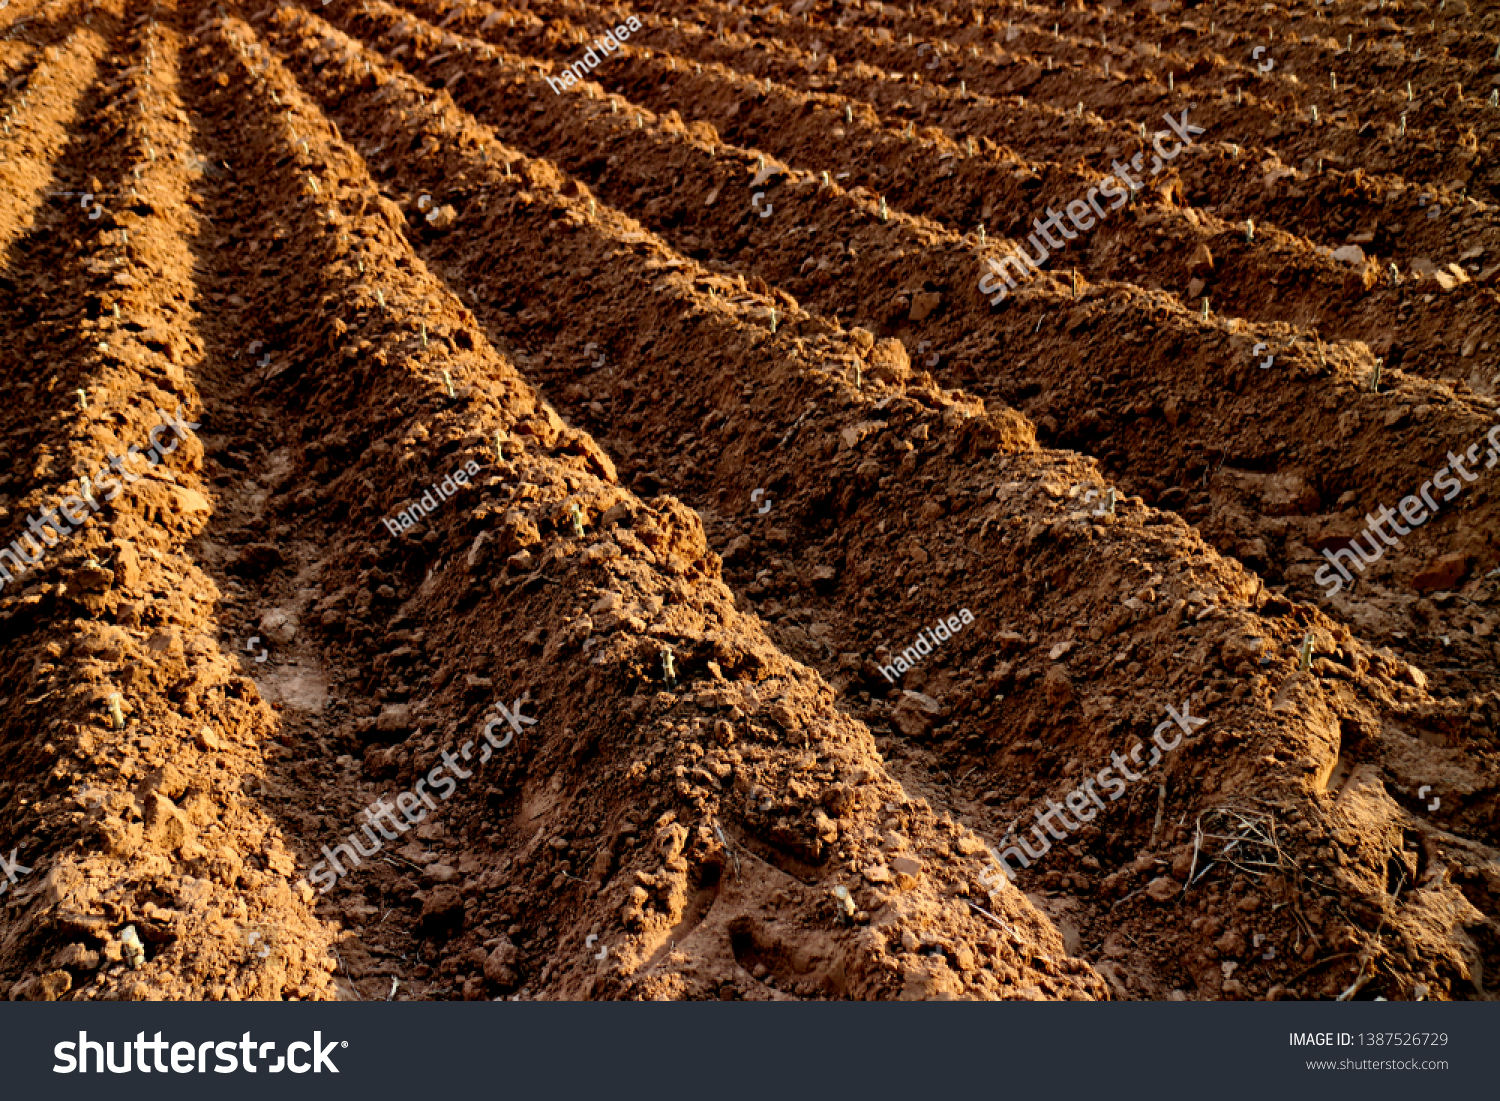 cassava planting plot land, area black soil for cassava plantation farm, landscape agricultural.  #1387526729